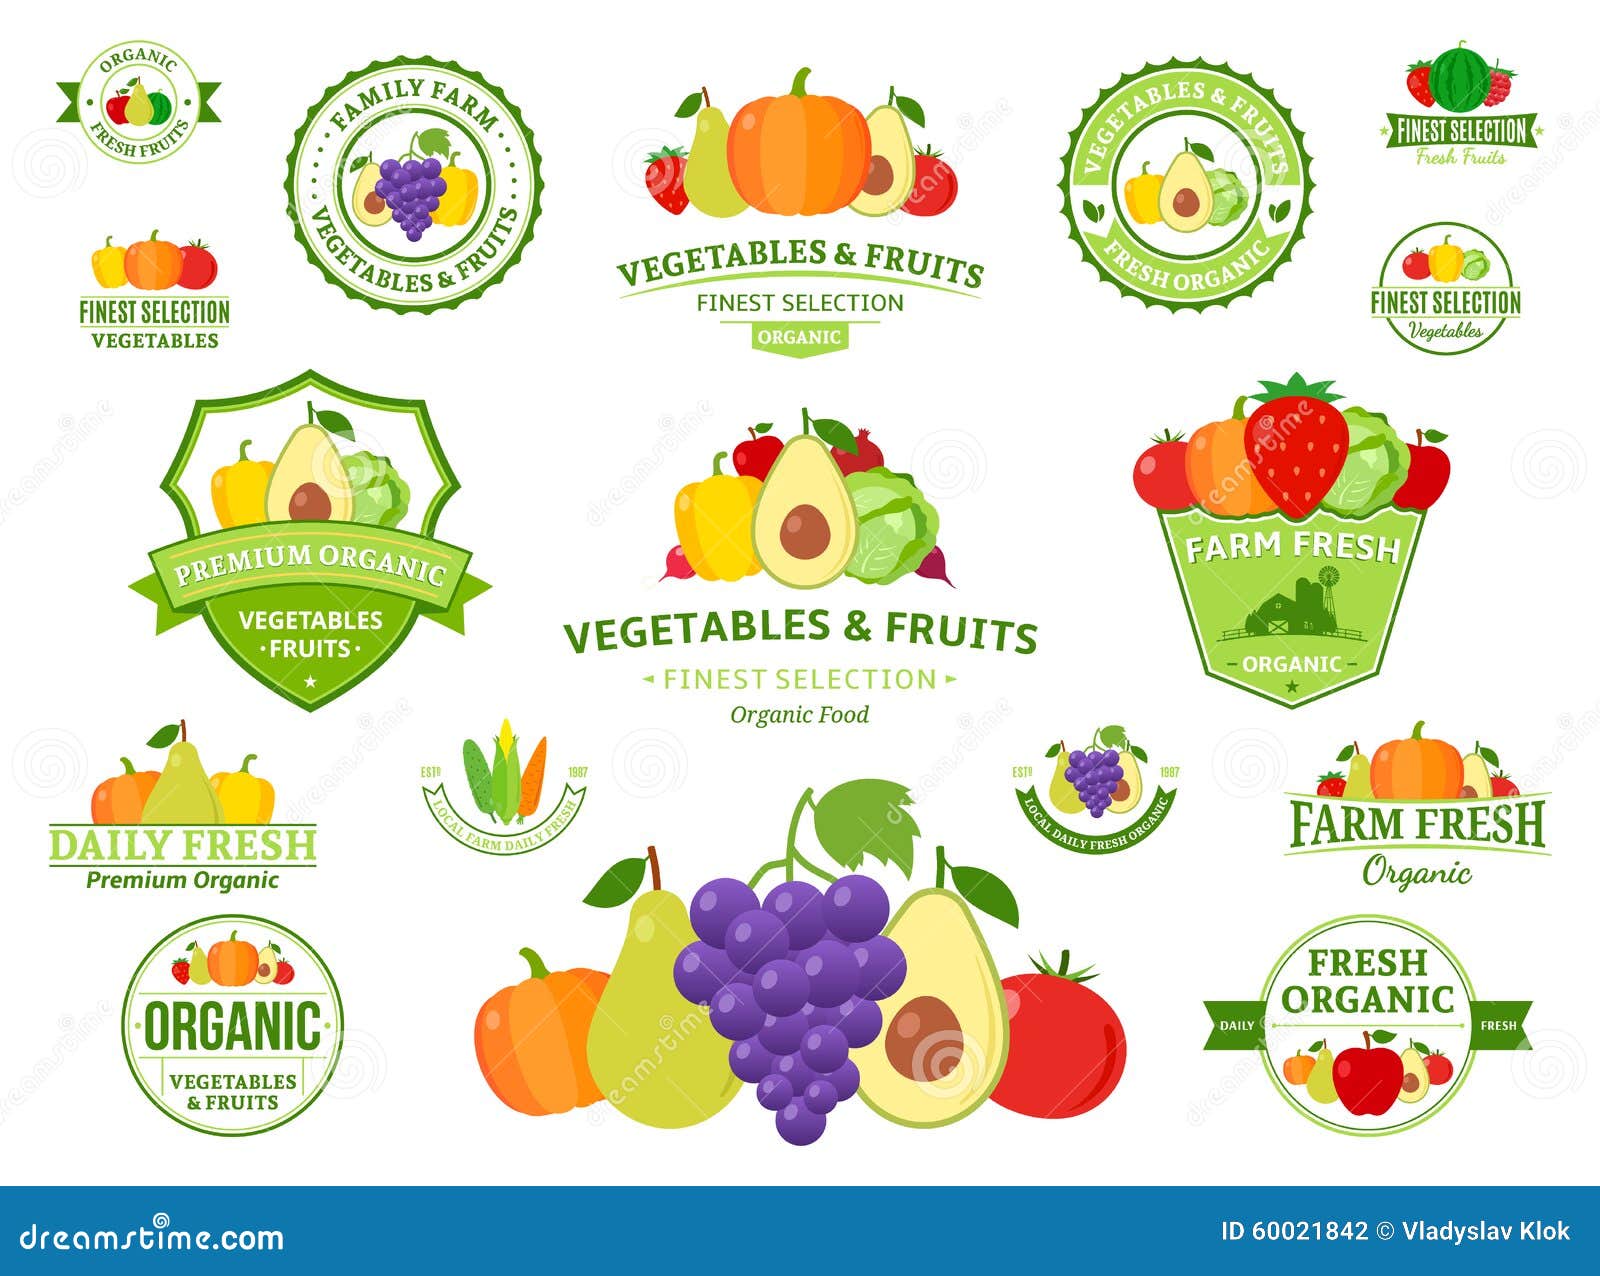 Las Frutas Y Verduras, Iconos De Las Frutas Y Verduras Ilustración del Vector - Ilustración de divisa: 60021842